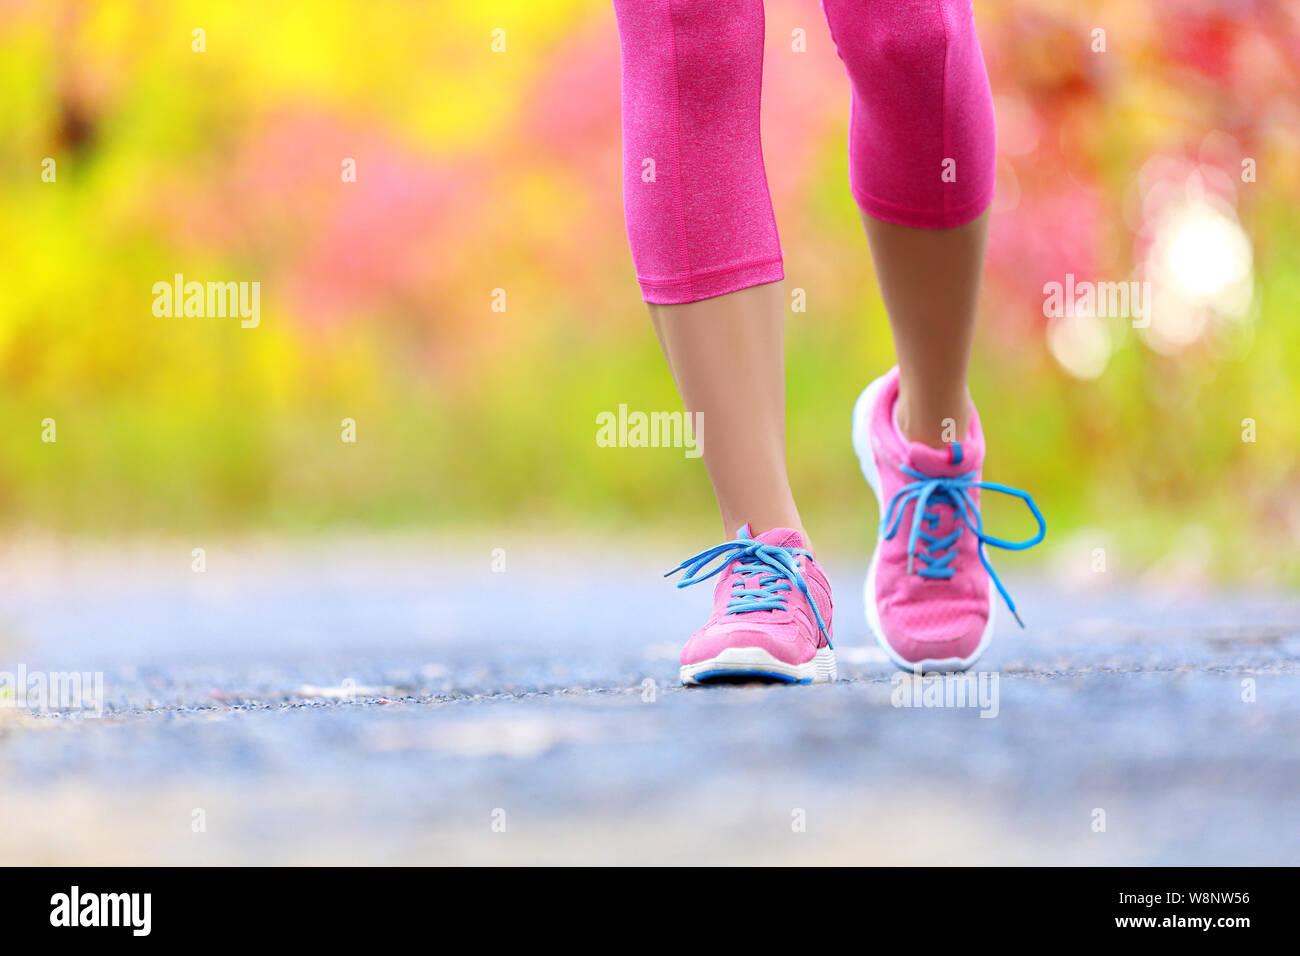 Wandern und Joggen Frau mit athletische Beine und Schuhe. Frauen gehen auf Trail im Wald im gesunden Lebensstil Konzept mit Nahaufnahme auf die Laufschuhe. Weibliche Athleten jogger Training im Freien. Stockfoto